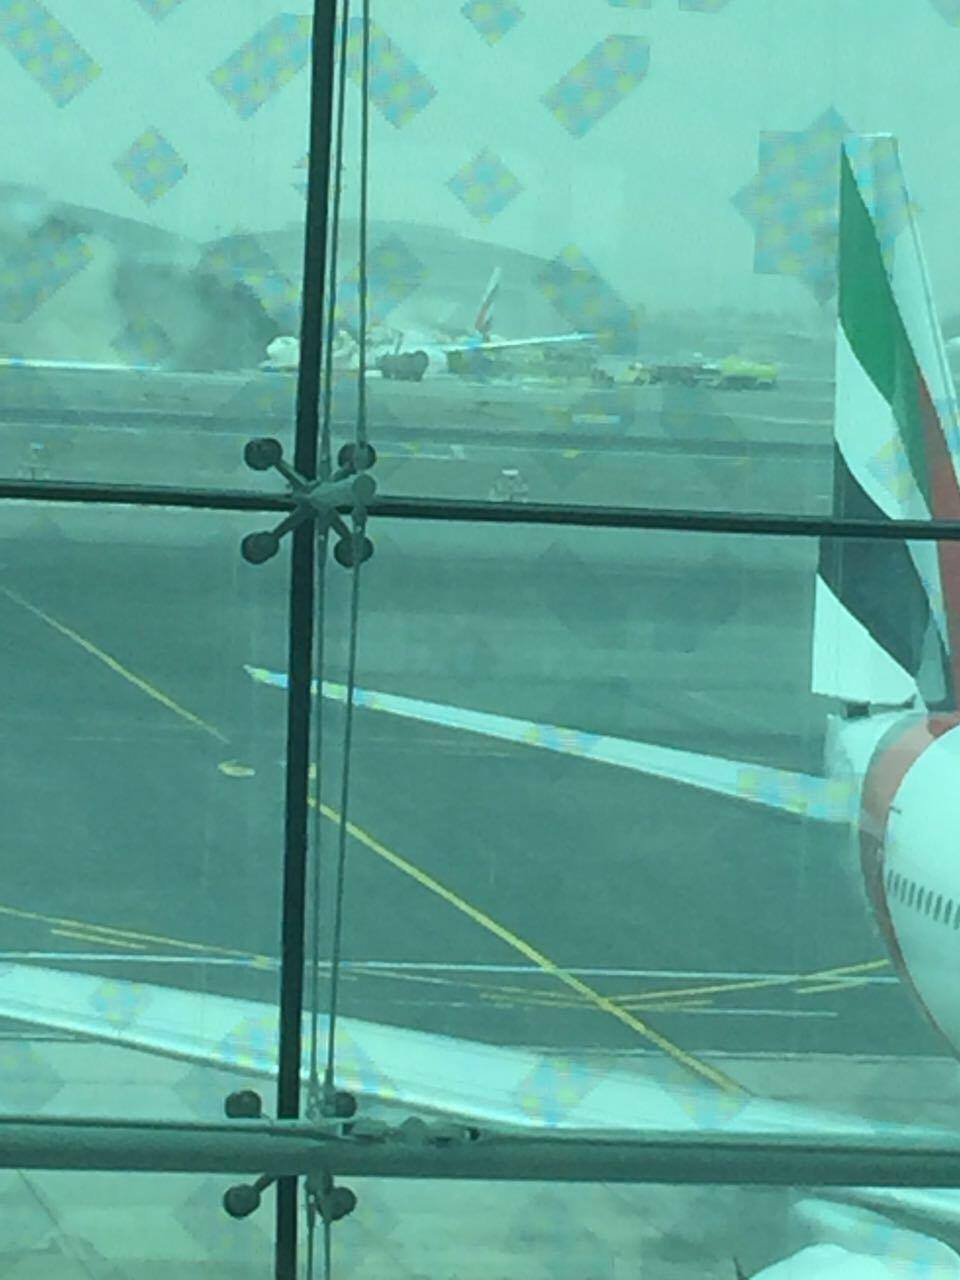 Emirates Boeing 777 crash landing at Dubai DXB